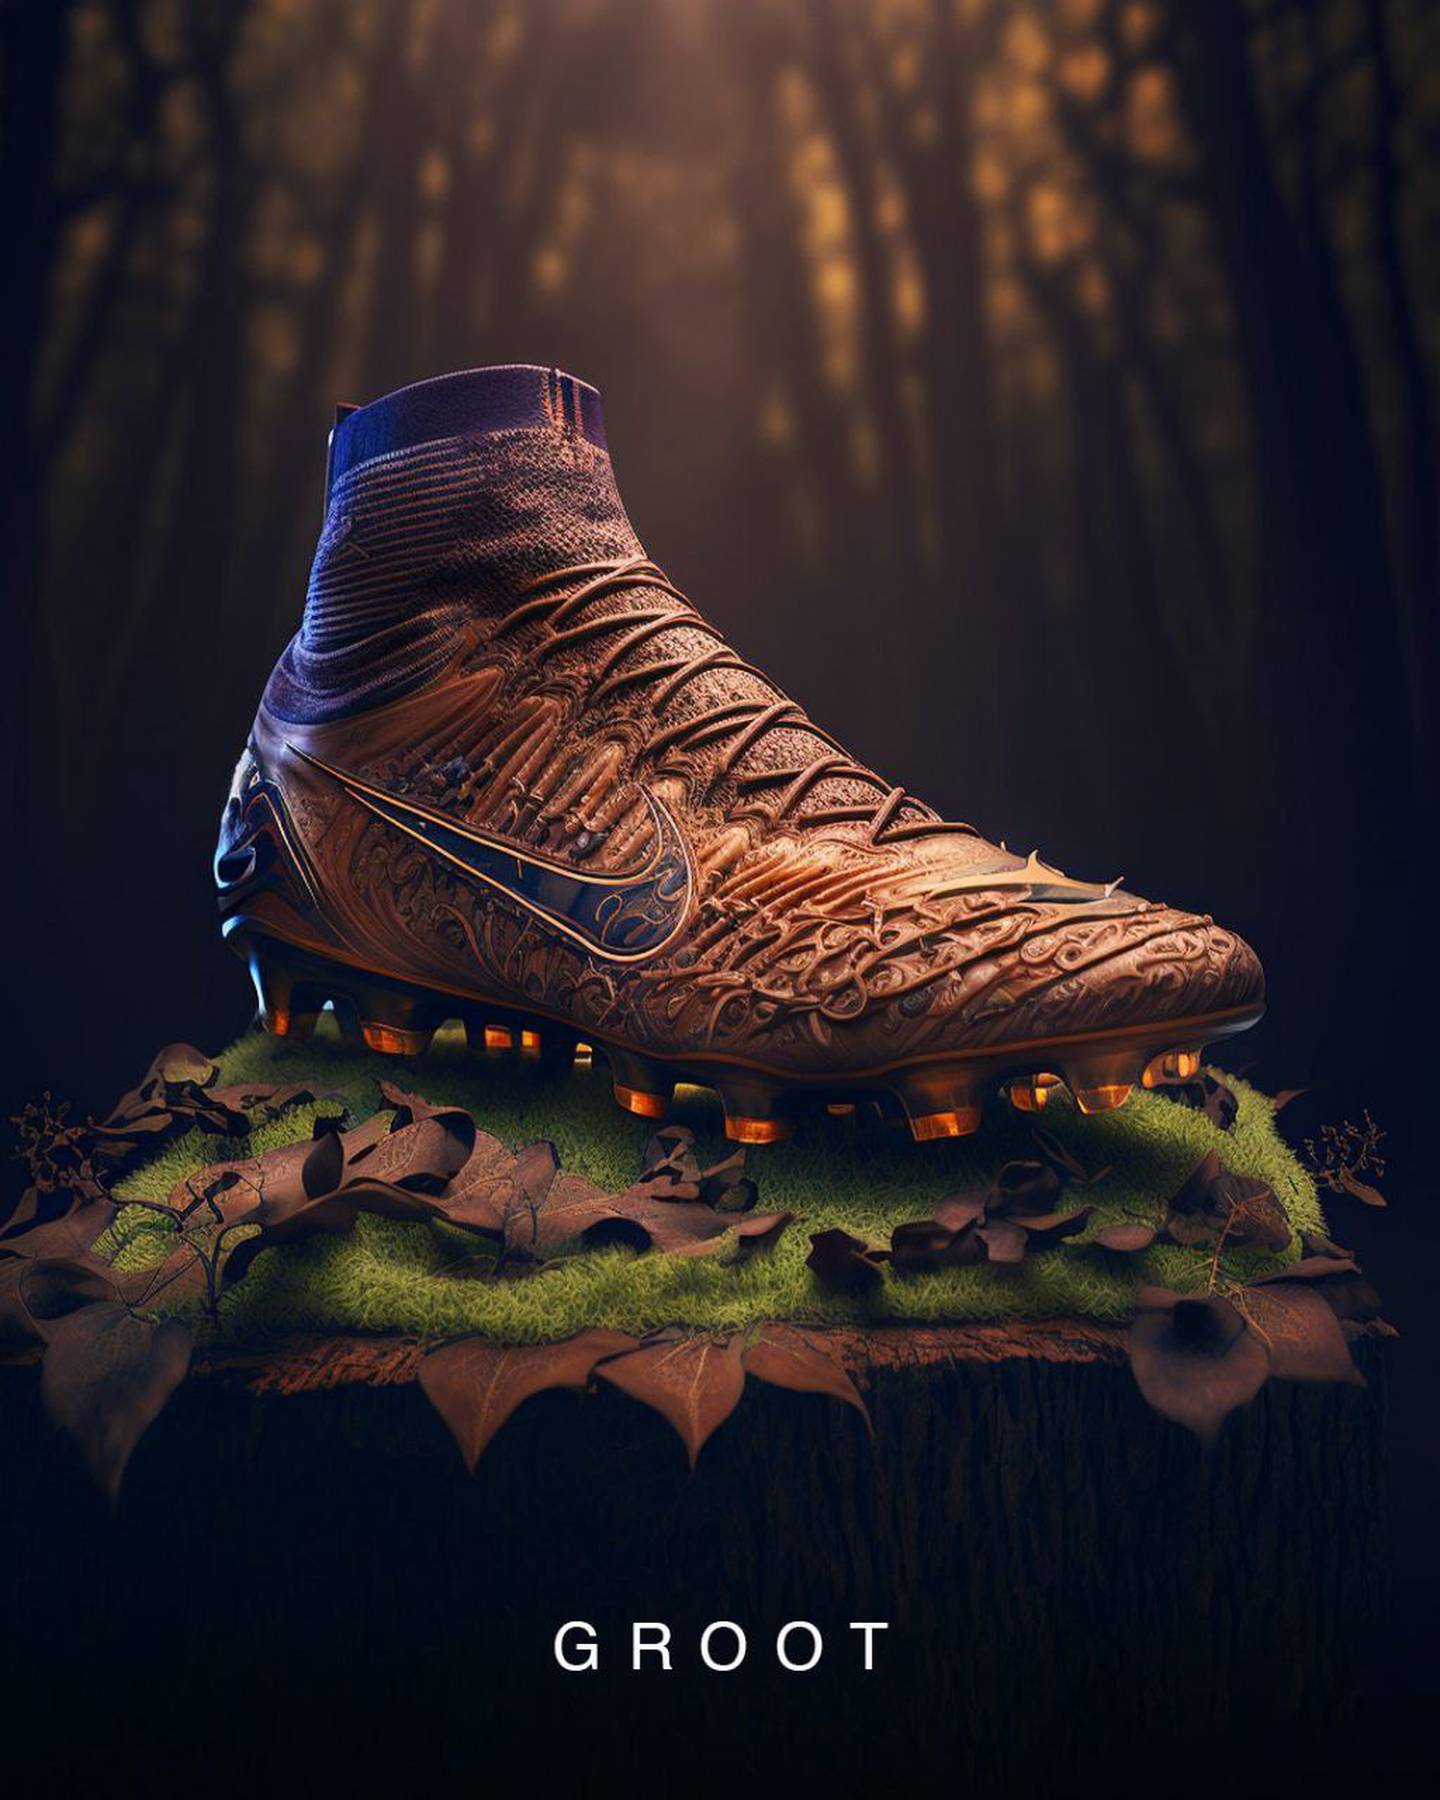 Zapatillas Nike x Marvel diseñadas por la Inteligencia Artificial Midjourney